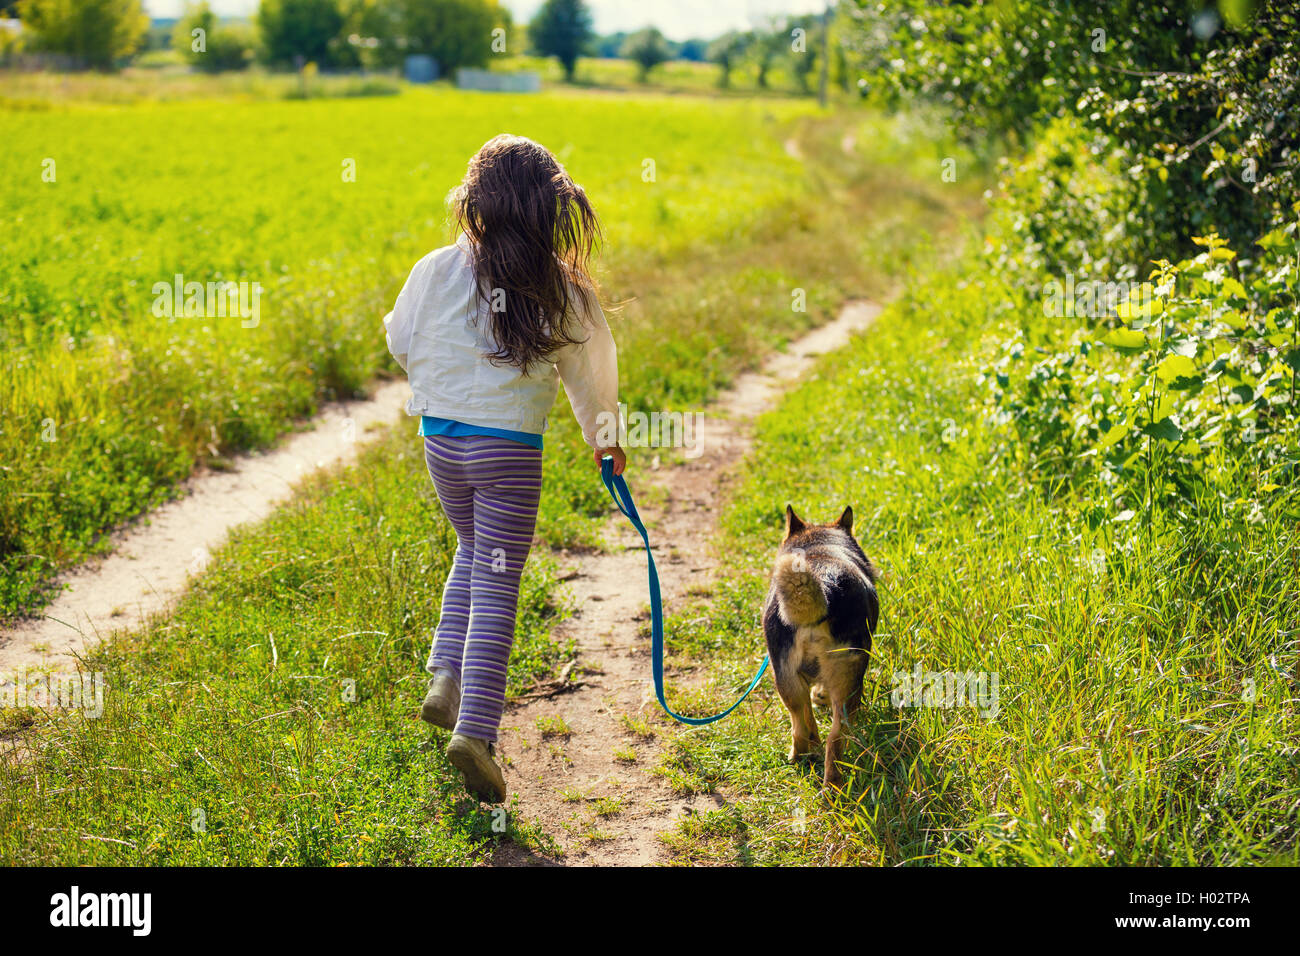 Можно просто гулять. Прогулка с собакой. Прогулка с собакой летом. Девочка на прогулке. Утренняя прогулка с собакой.